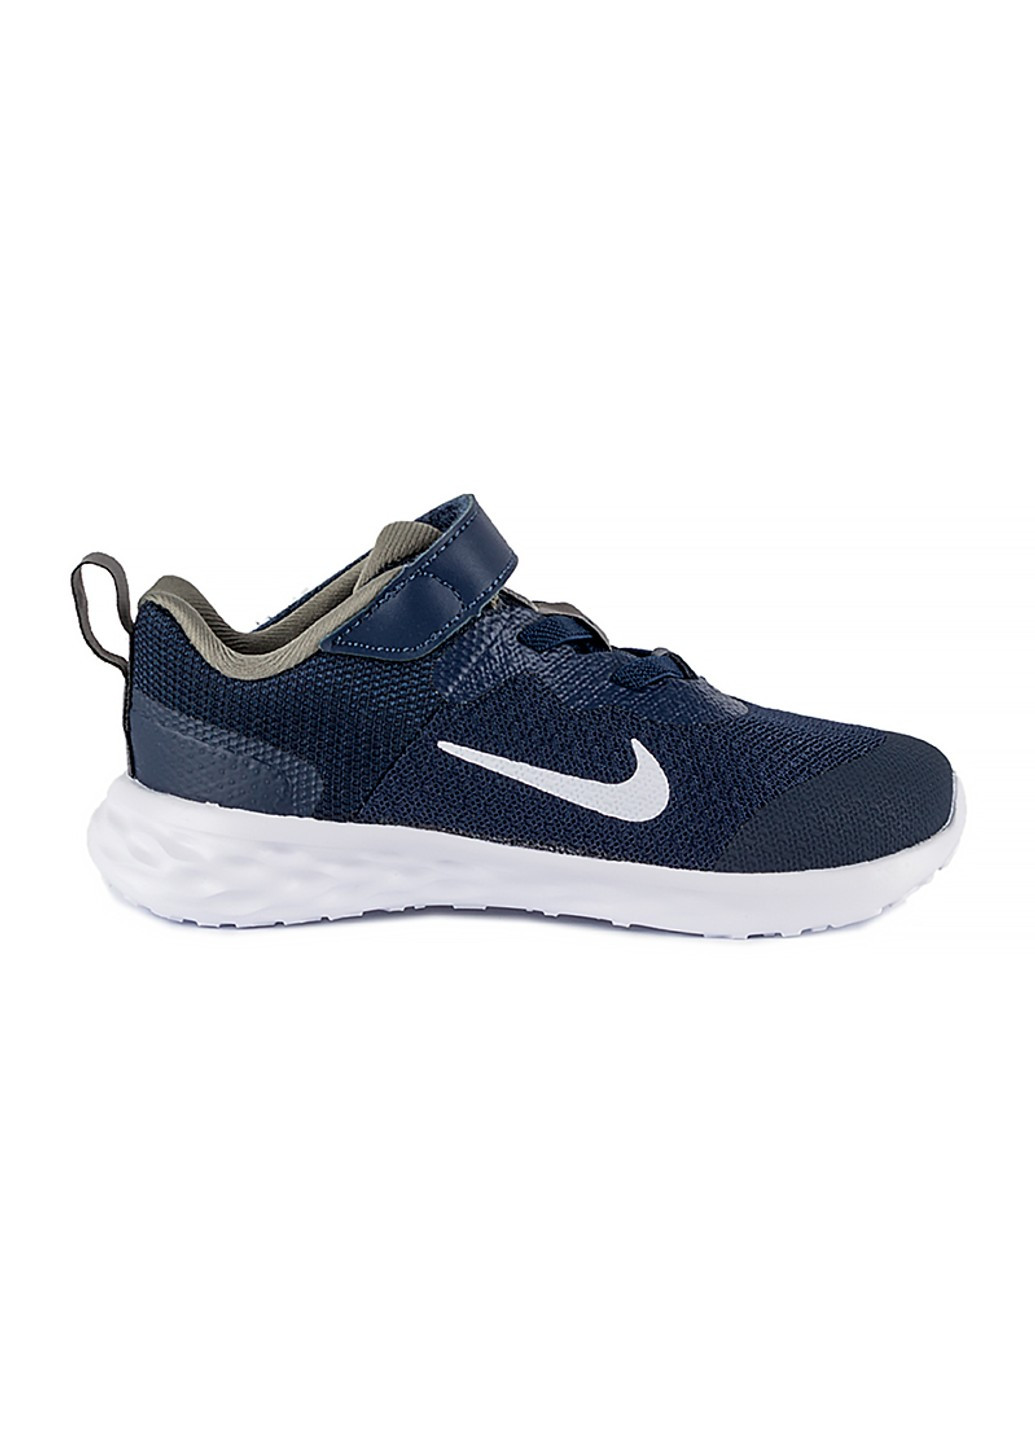 Синие демисезонные кроссовки revolution 6 nn (tdv) Nike